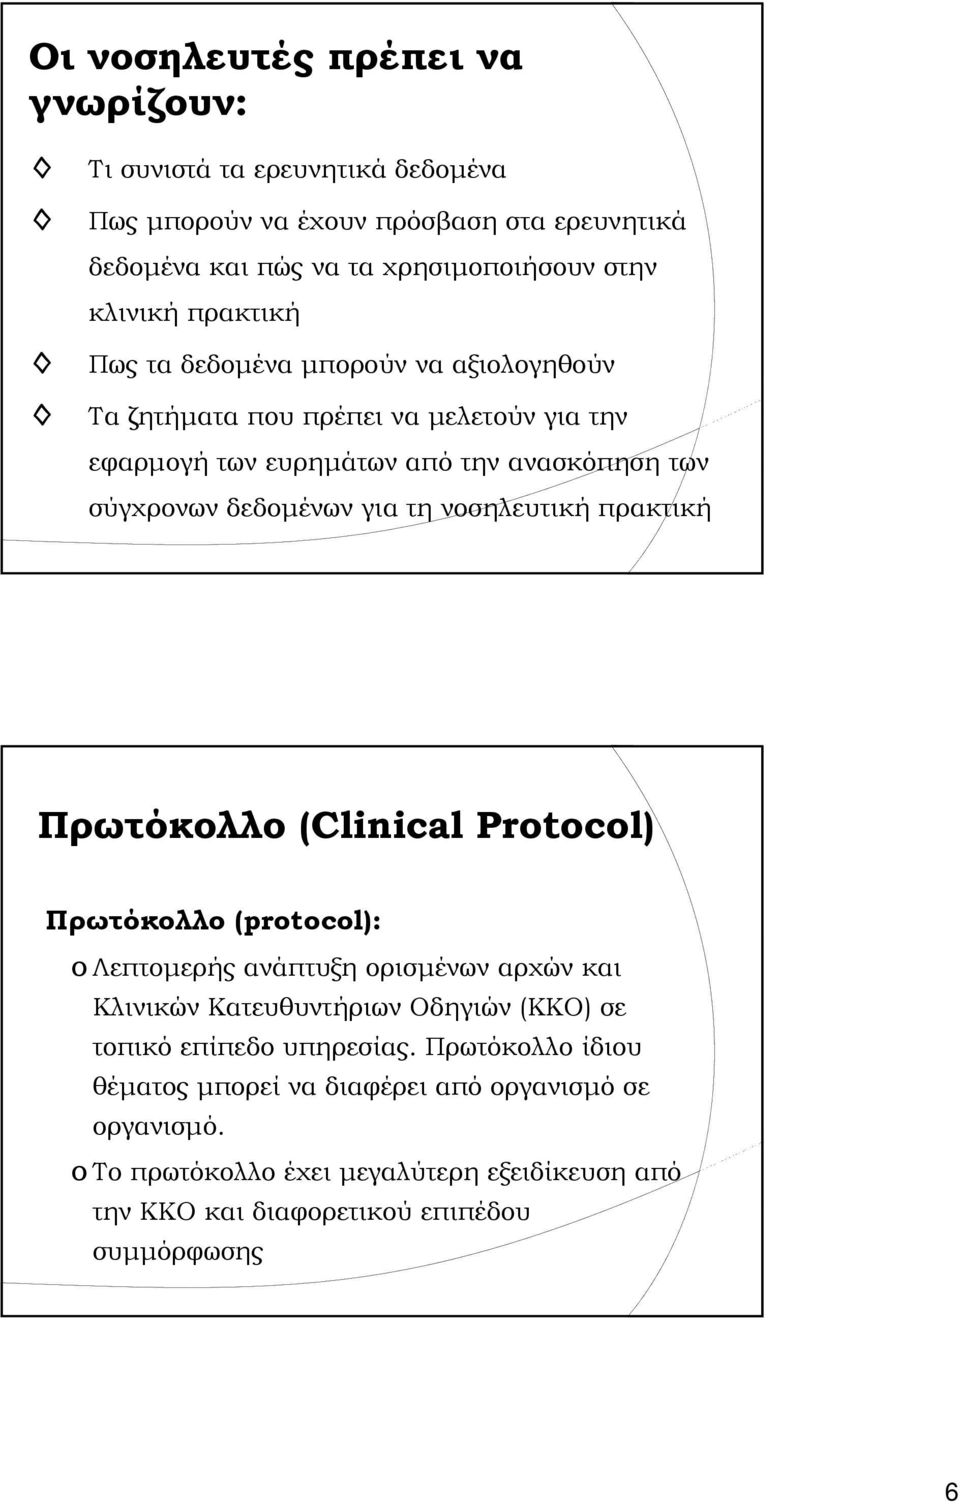 νοσηλευτική πρακτική Πρωτόκολλο (Clinical Protocol) Πρωτόκολλο (protocol): o Λεπτομερής ανάπτυξη ορισμένων αρχών και Κλινικών Κατευθυντήριων Οδηγιών (ΚΚΟ) σε τοπικό